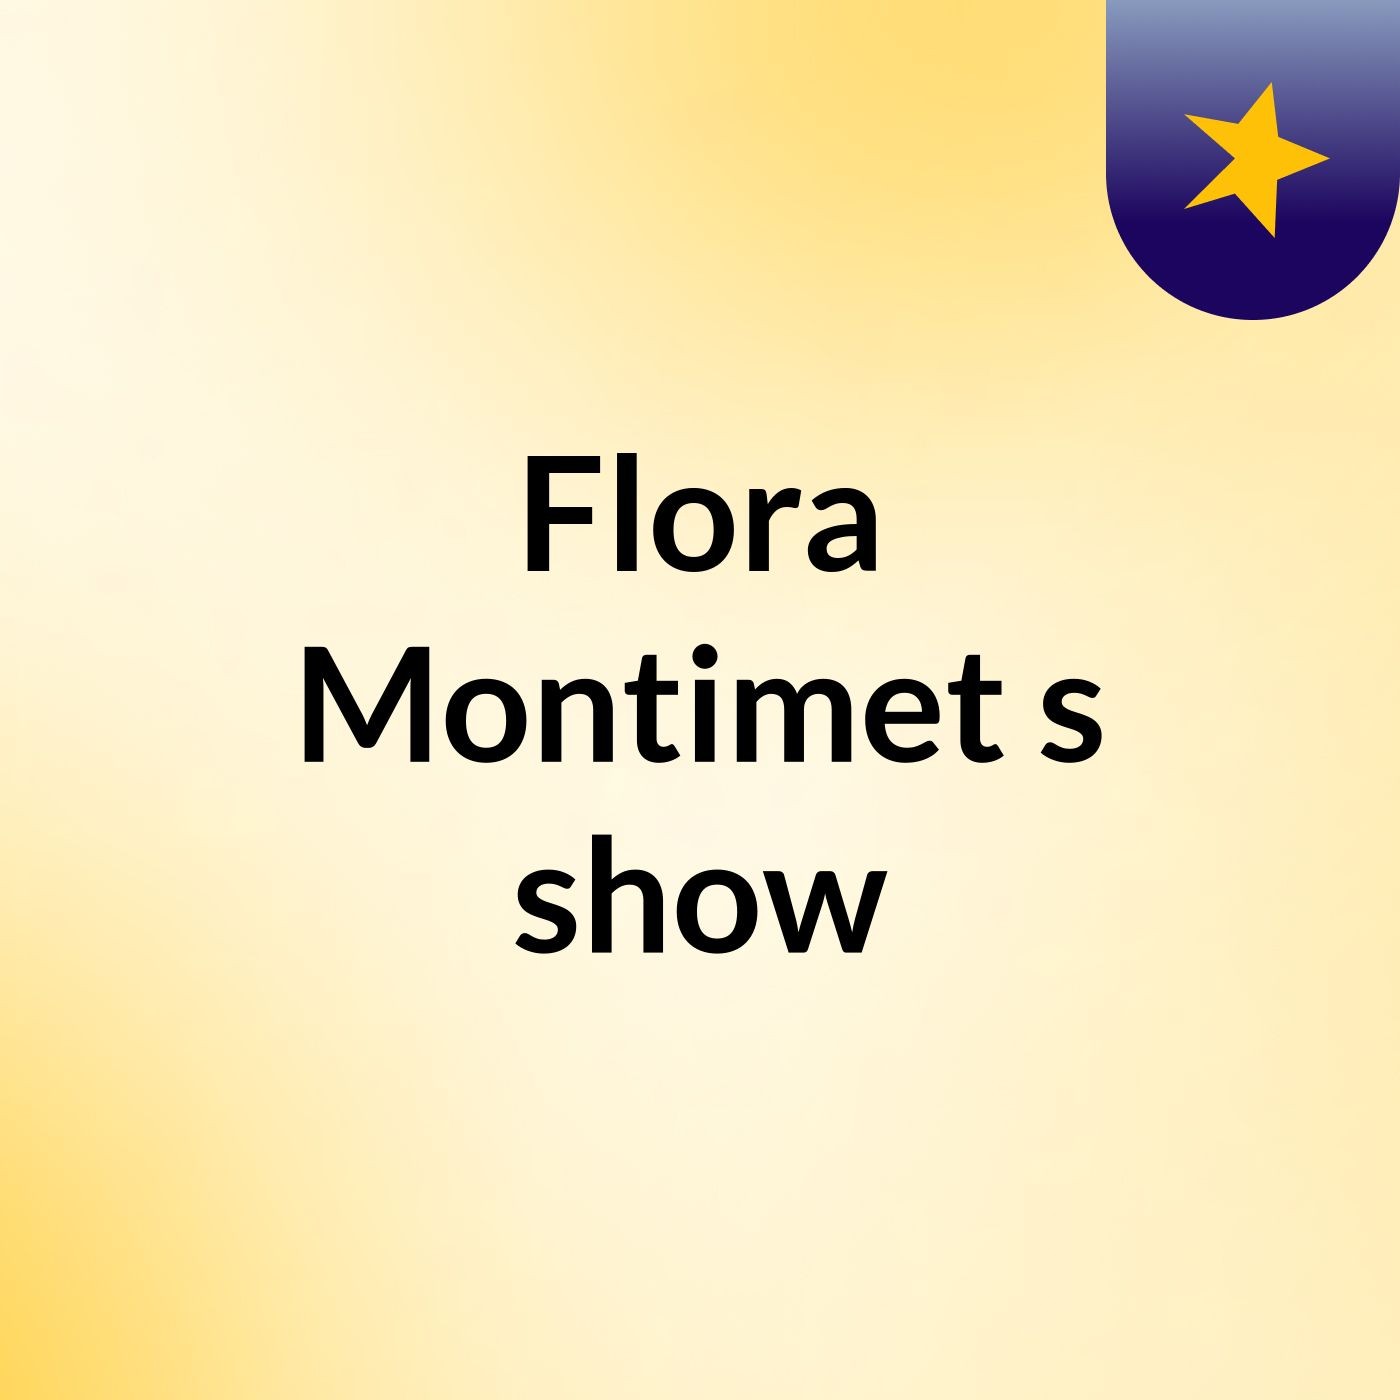 Flora Montimet's show